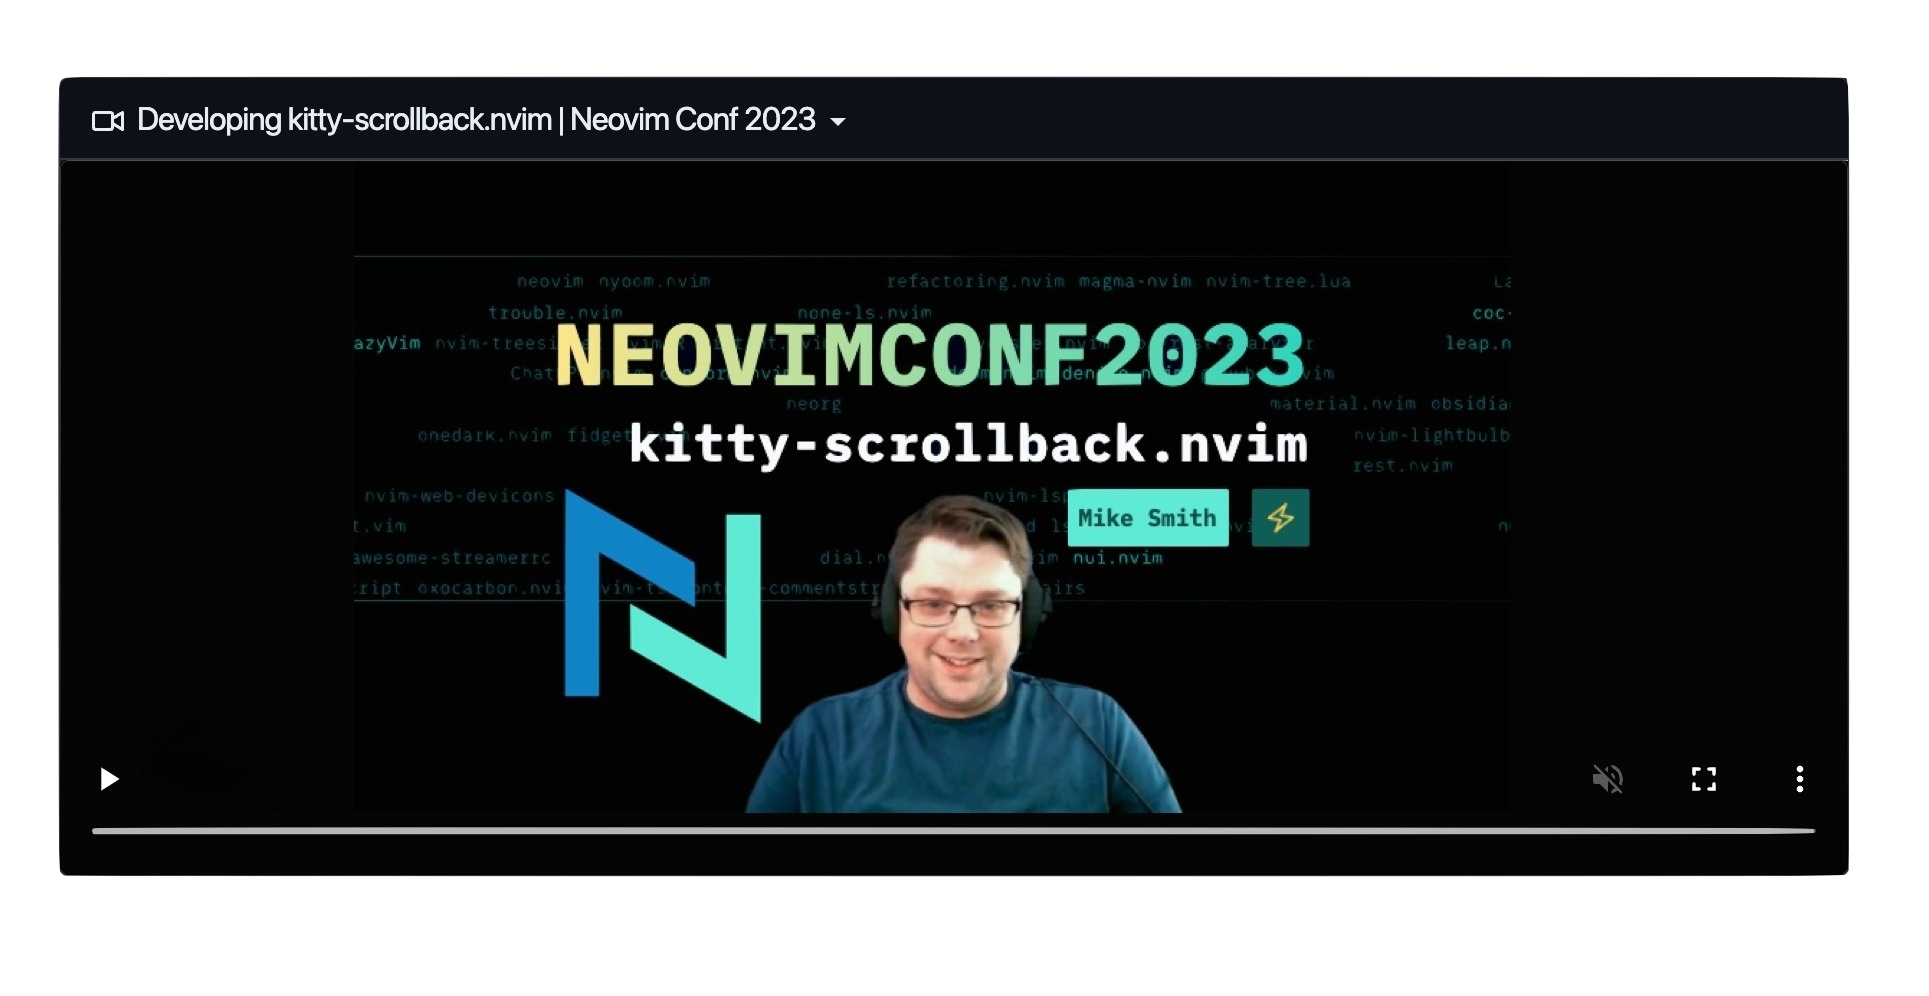 Developing kitty-scrollback.nvim NeovimConf 2023